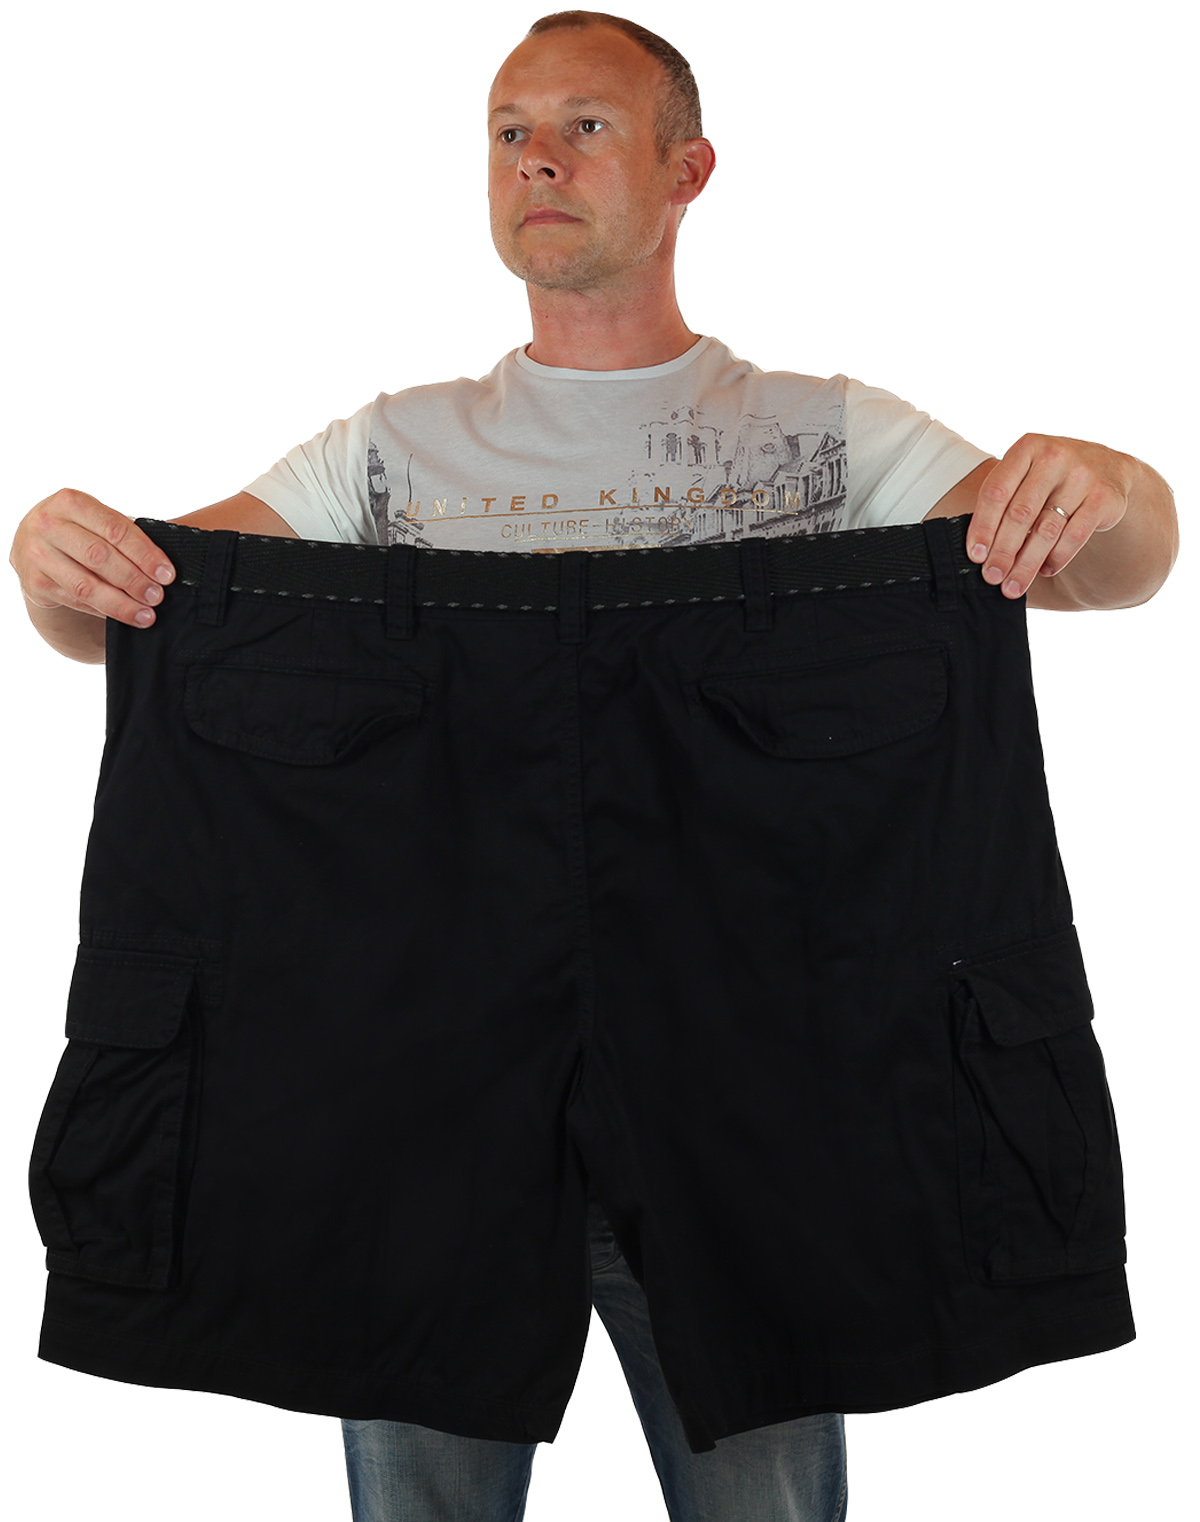 Больше shorts. Мужские шорты баталы Foundry, США. Огромные шорты. Гигантские шорты. Шорты огромных размеров.